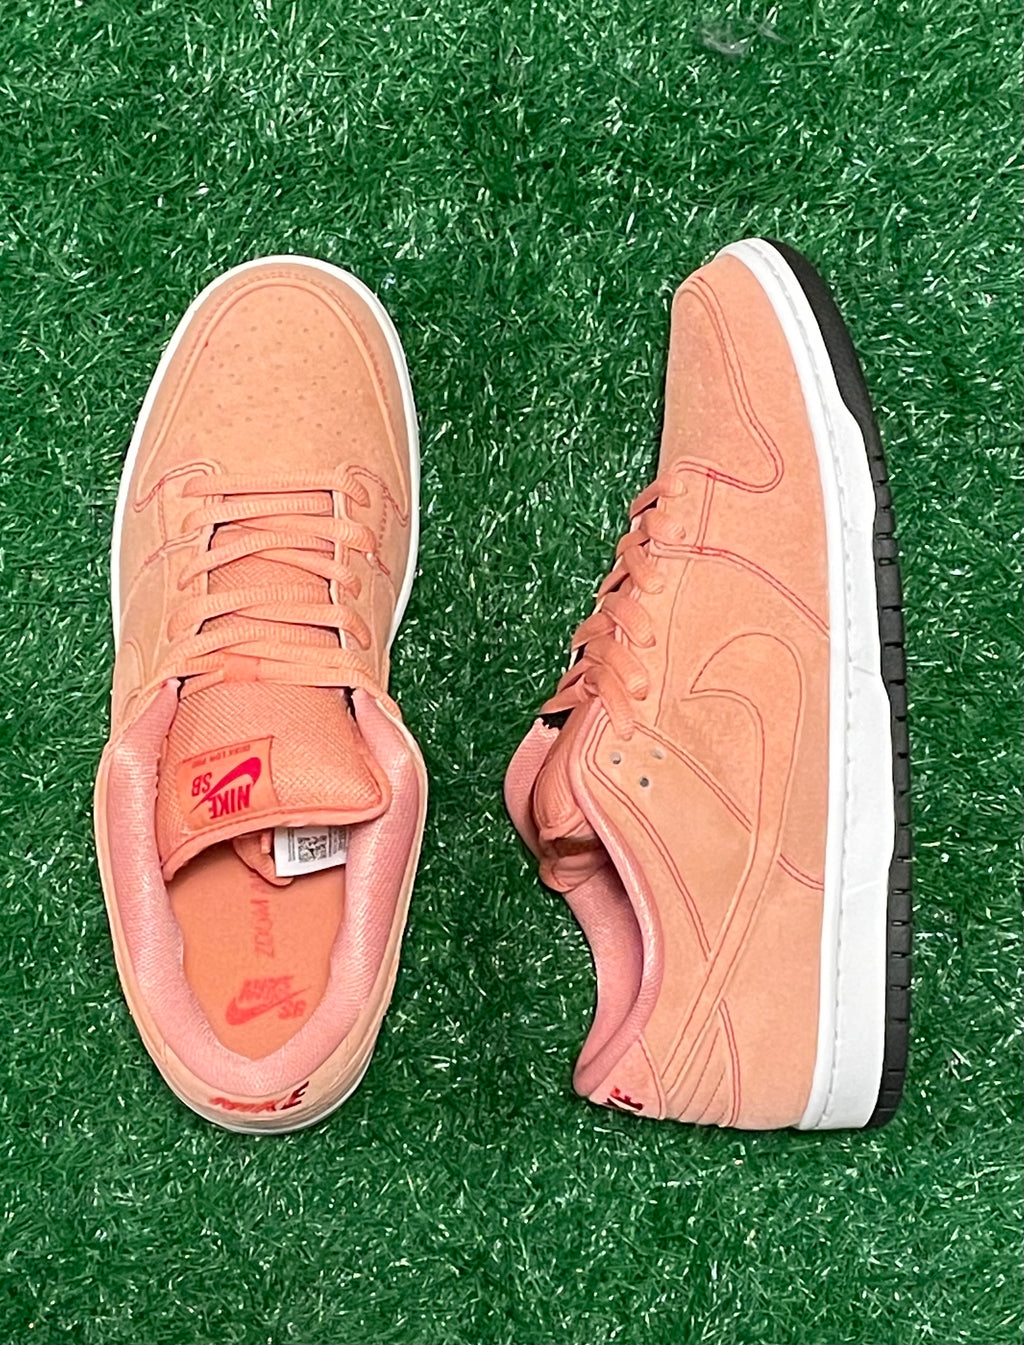 Nike SB Dunk Low Pink Pig | Heritage Kicks